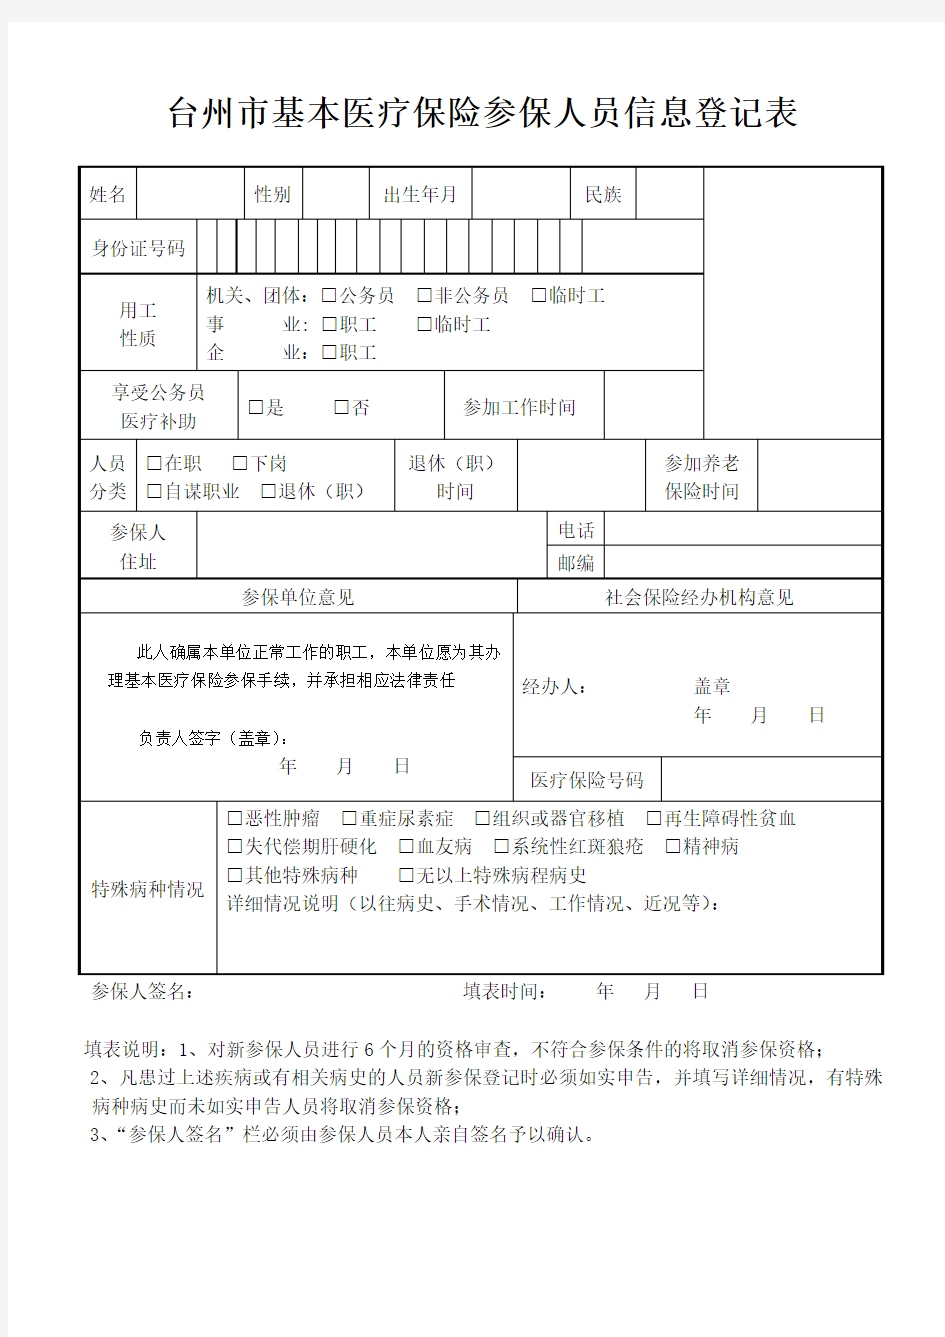 台州市基本医疗保险参保人员信息登记表